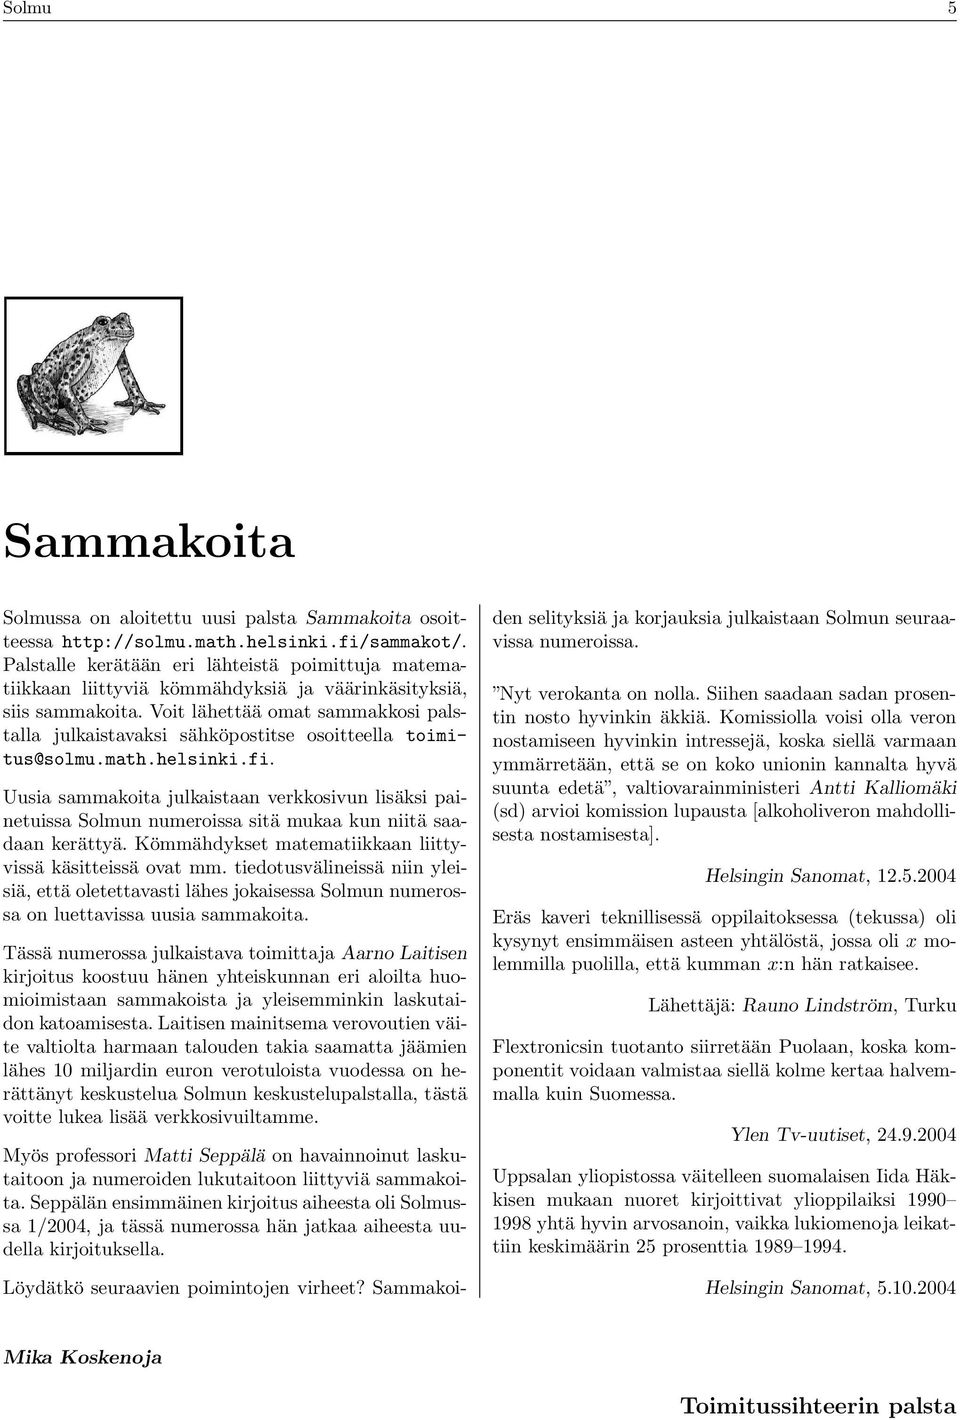 Voit lähettää omat sammakkosi palstalla julkaistavaksi sähköpostitse osoitteella toimitus@solmu.math.helsinki.fi.